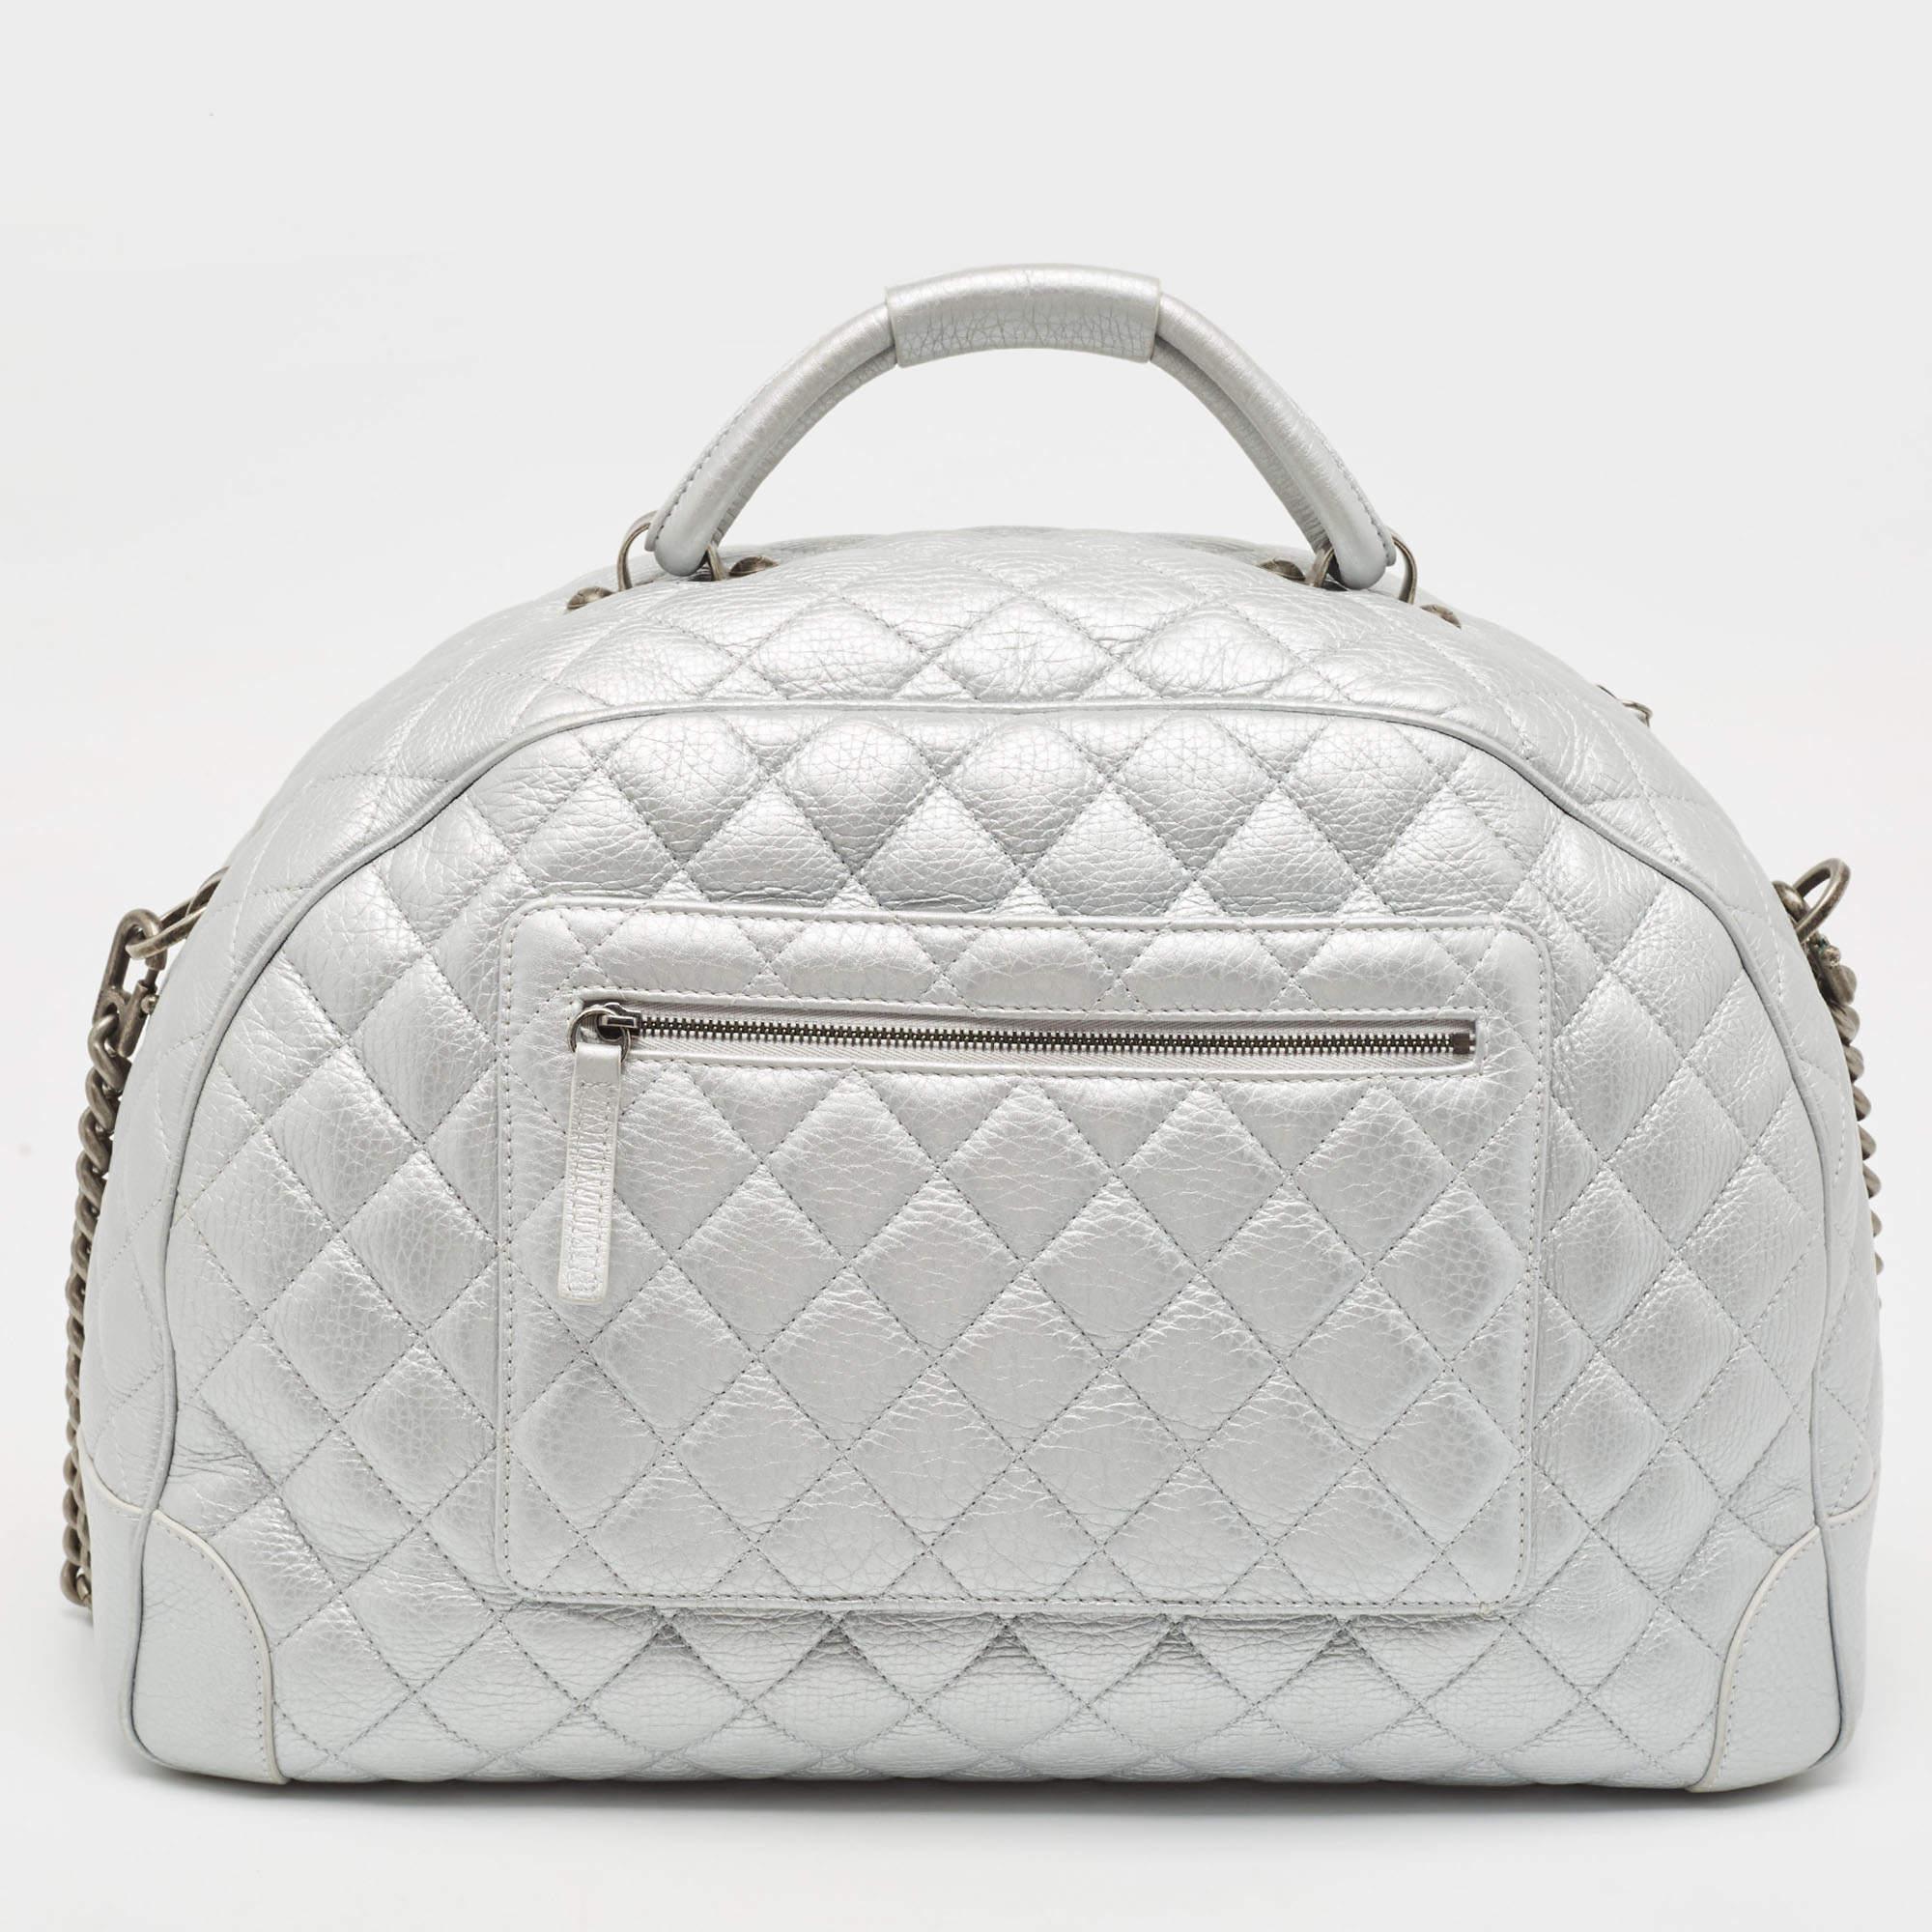 Makellose Handwerkskunst, immenser Stil und ein Hauch von Eleganz - diese Chanel Tasche hat einfach alles! Die perfekt genähte Handtasche wird nur aus erstklassigen MATERIALEN hergestellt, damit sie Ihnen lange erhalten bleibt. Mit den